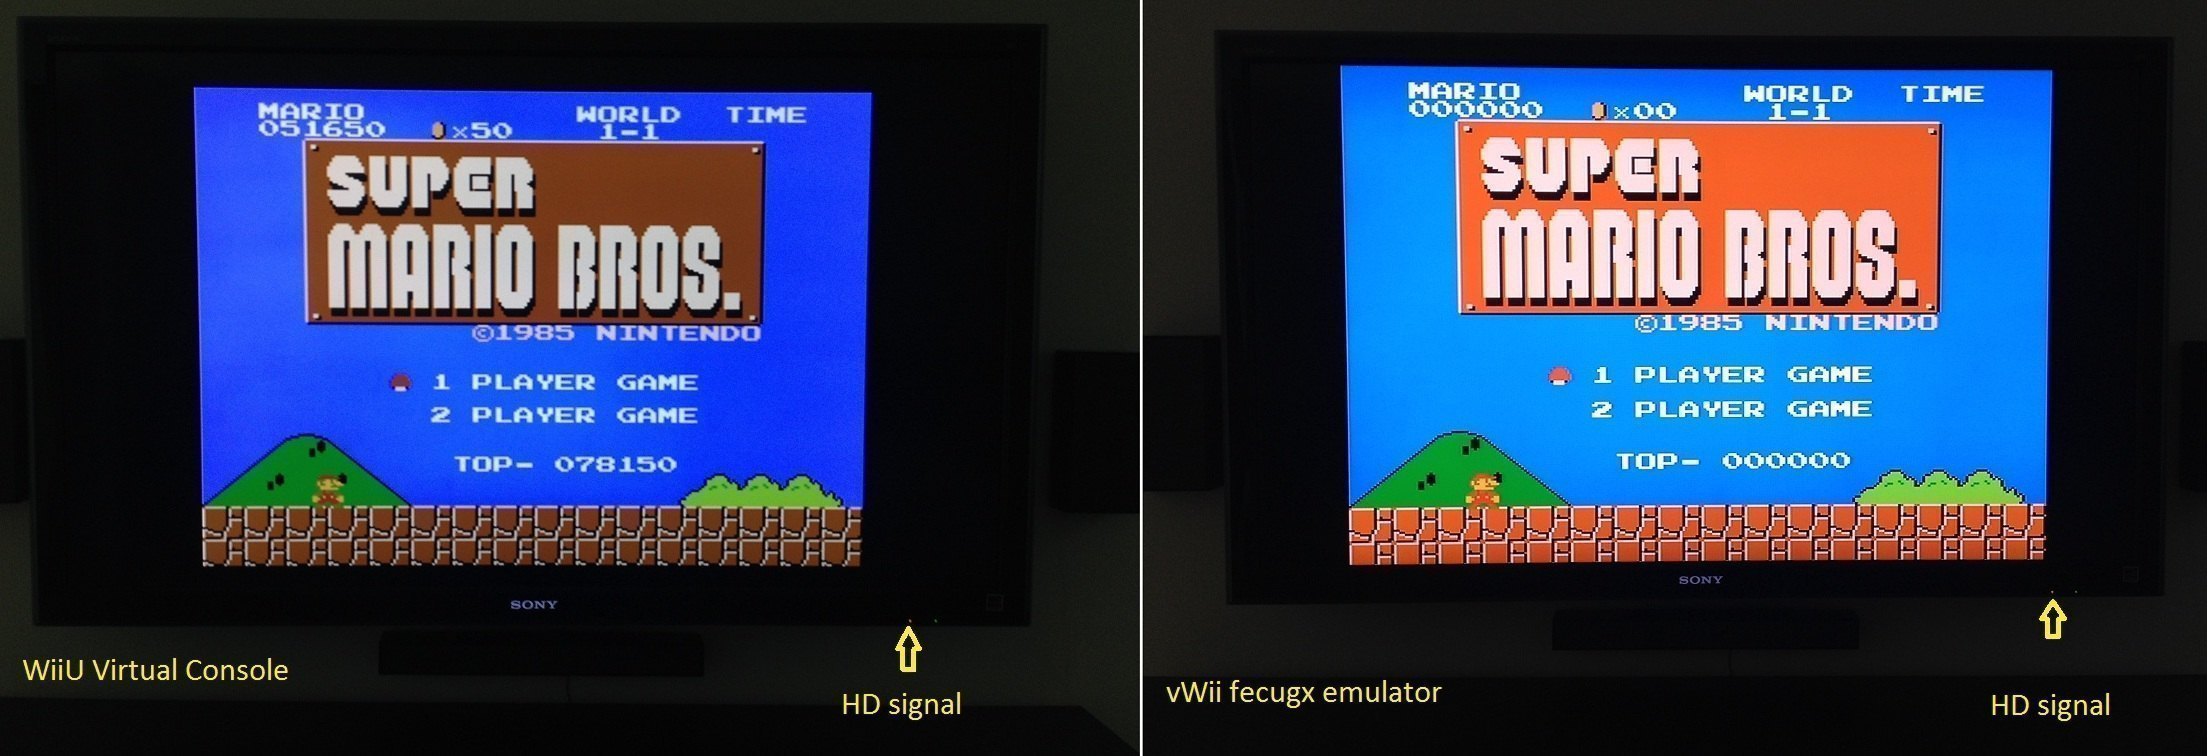 WiiU VC vs. vWii fceugx emulator | GBAtemp.net - The Independent Video Game  Community